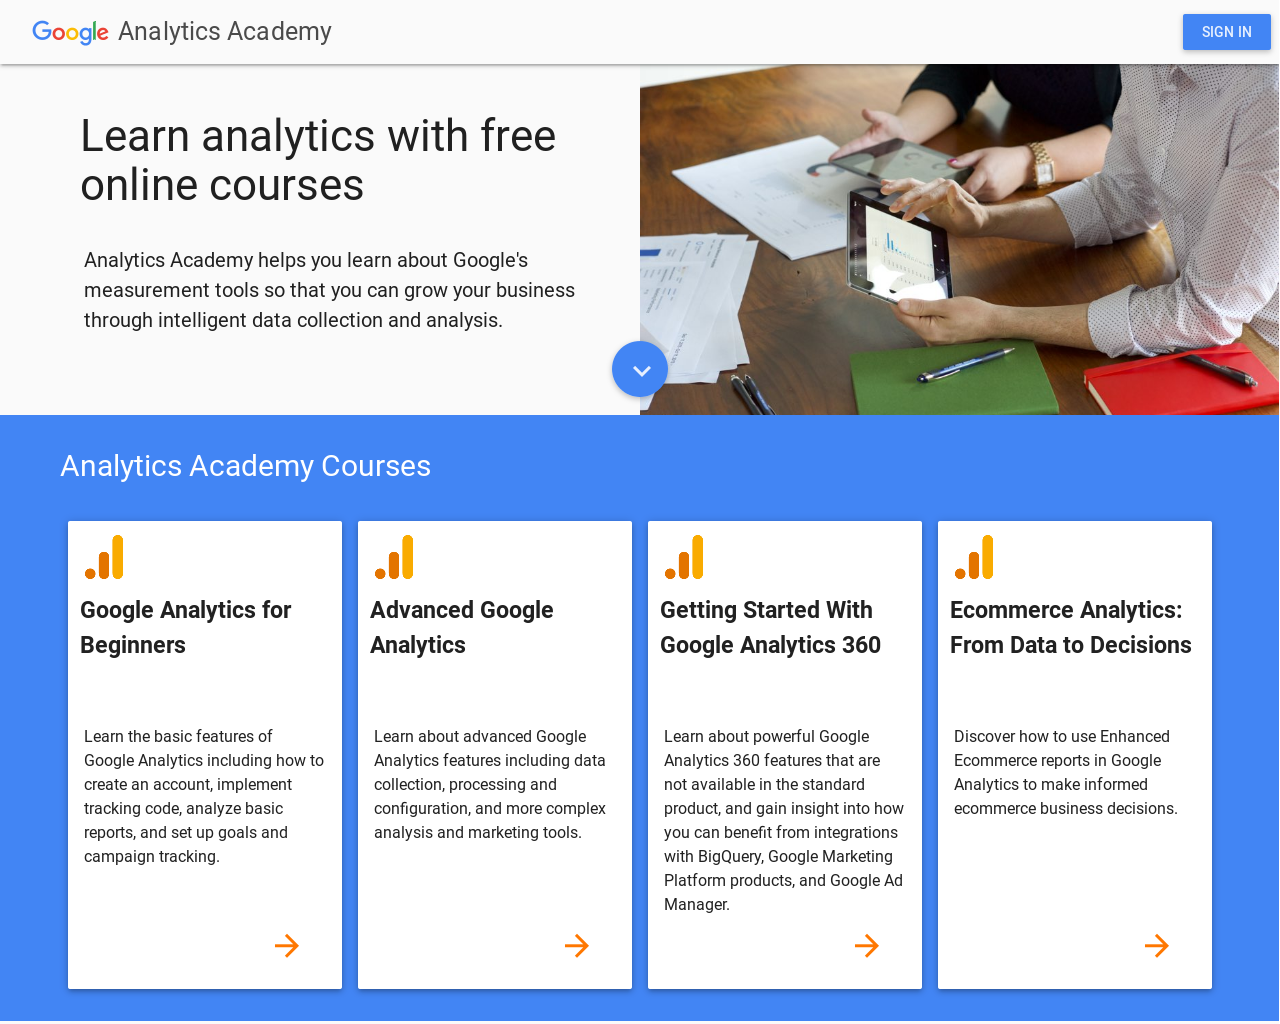 Free courses: Analytics Academy